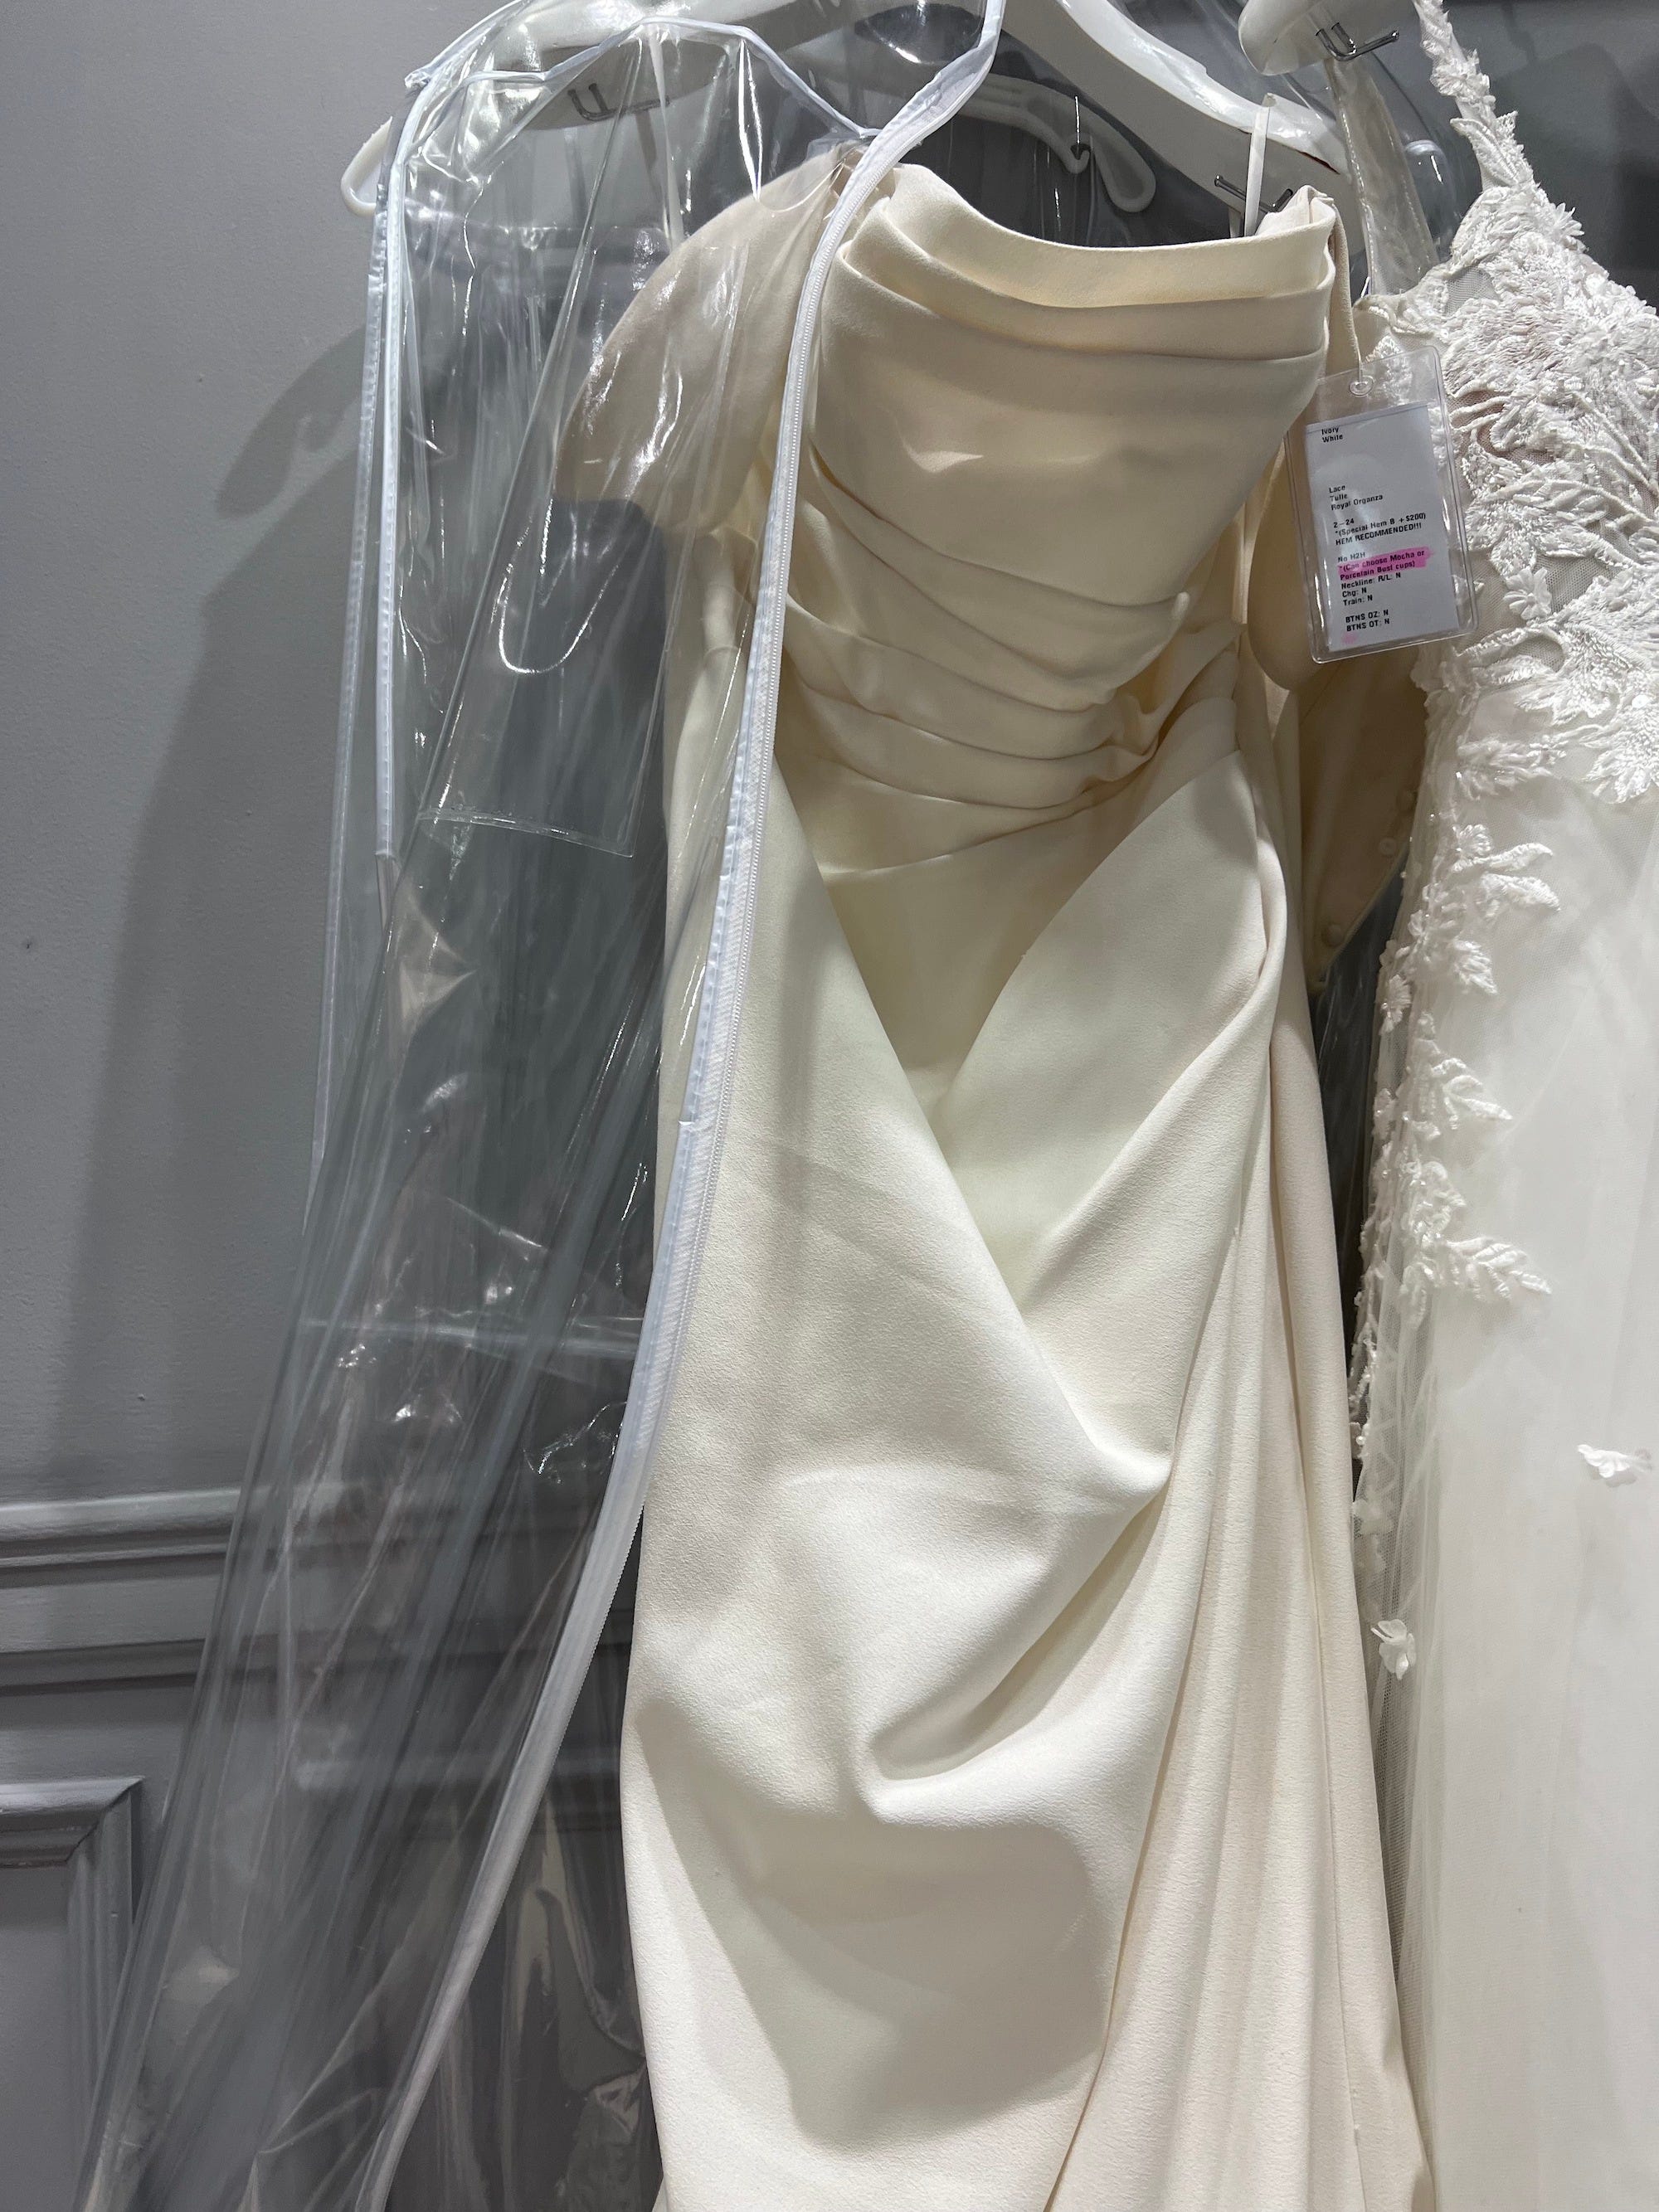 Ein Hochzeitskleid hängt auf einem Kleiderbügel.